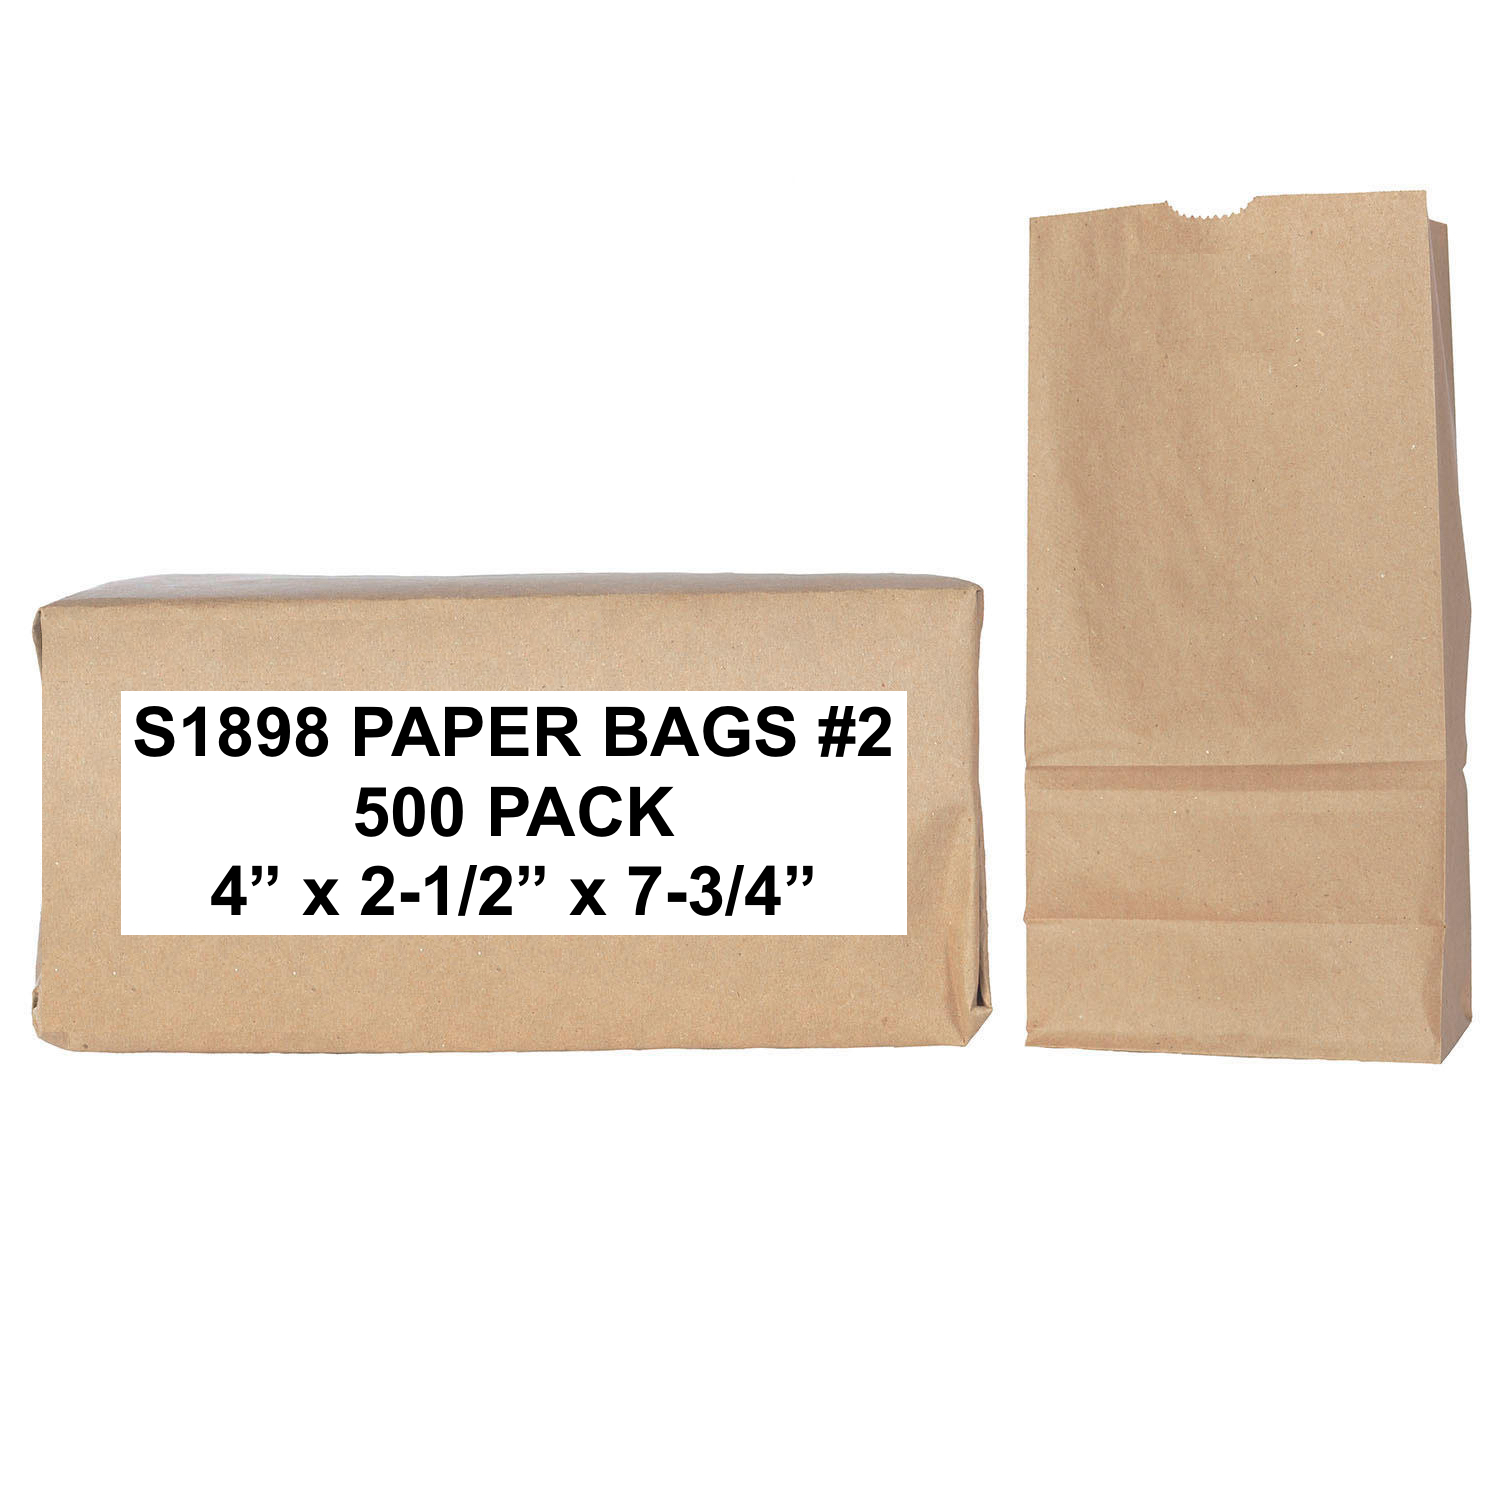 S1898 Brown Paper Bags, Standard Grade, 500 Bags #2